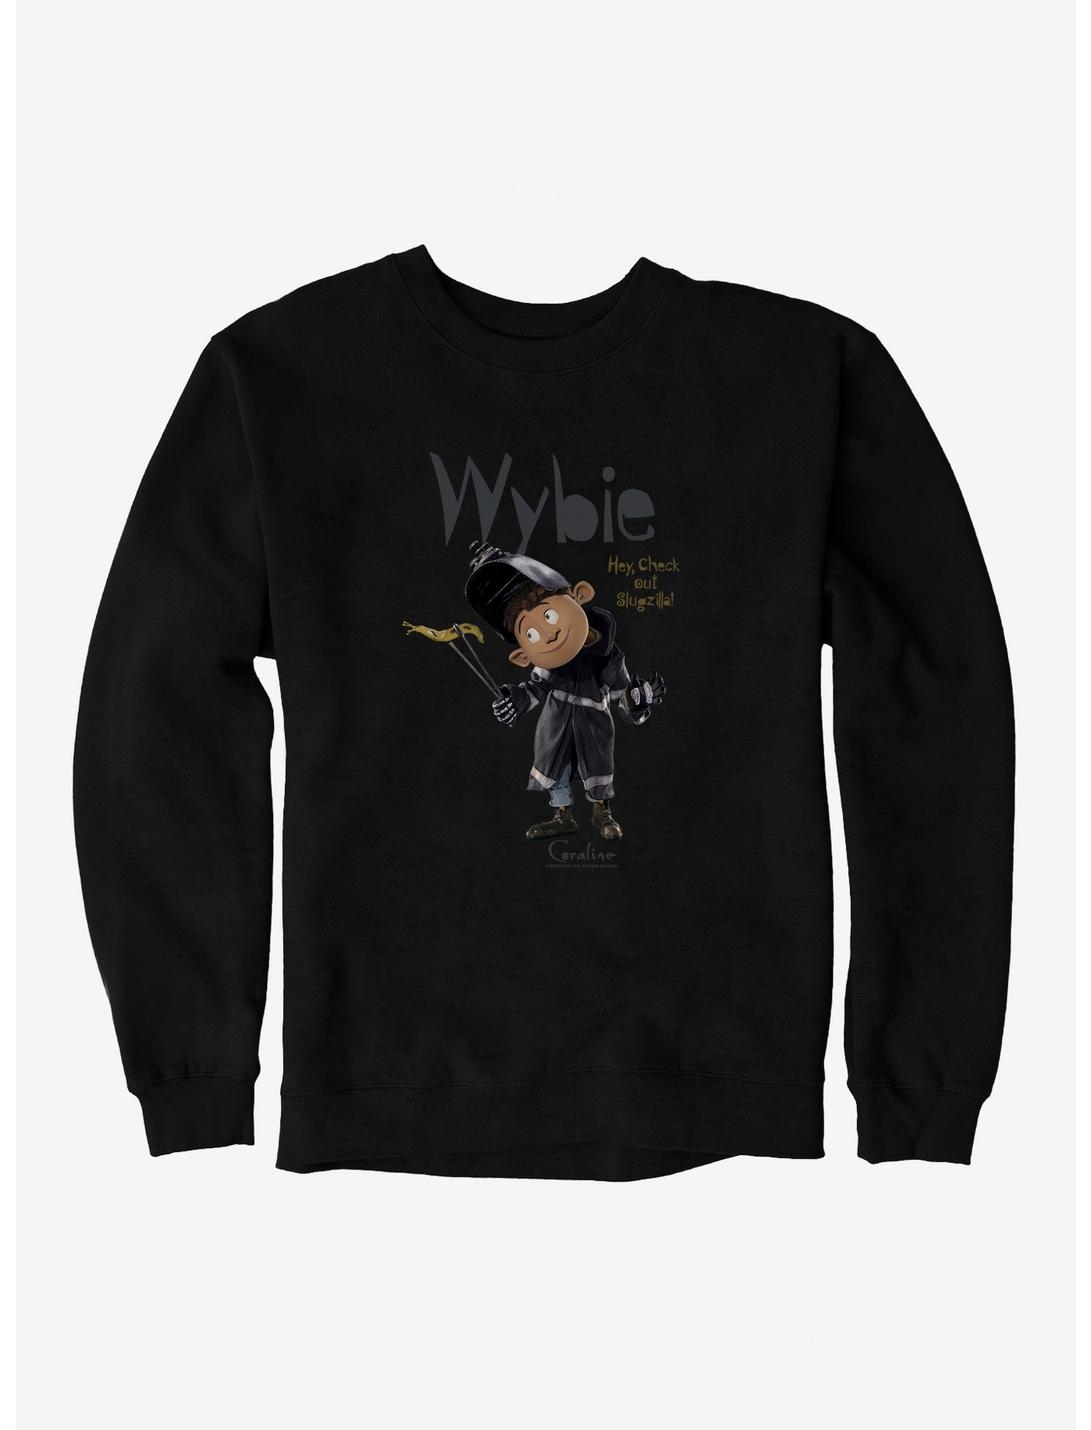 Coraline Wybie Sweatshirt, BLACK, hi-res